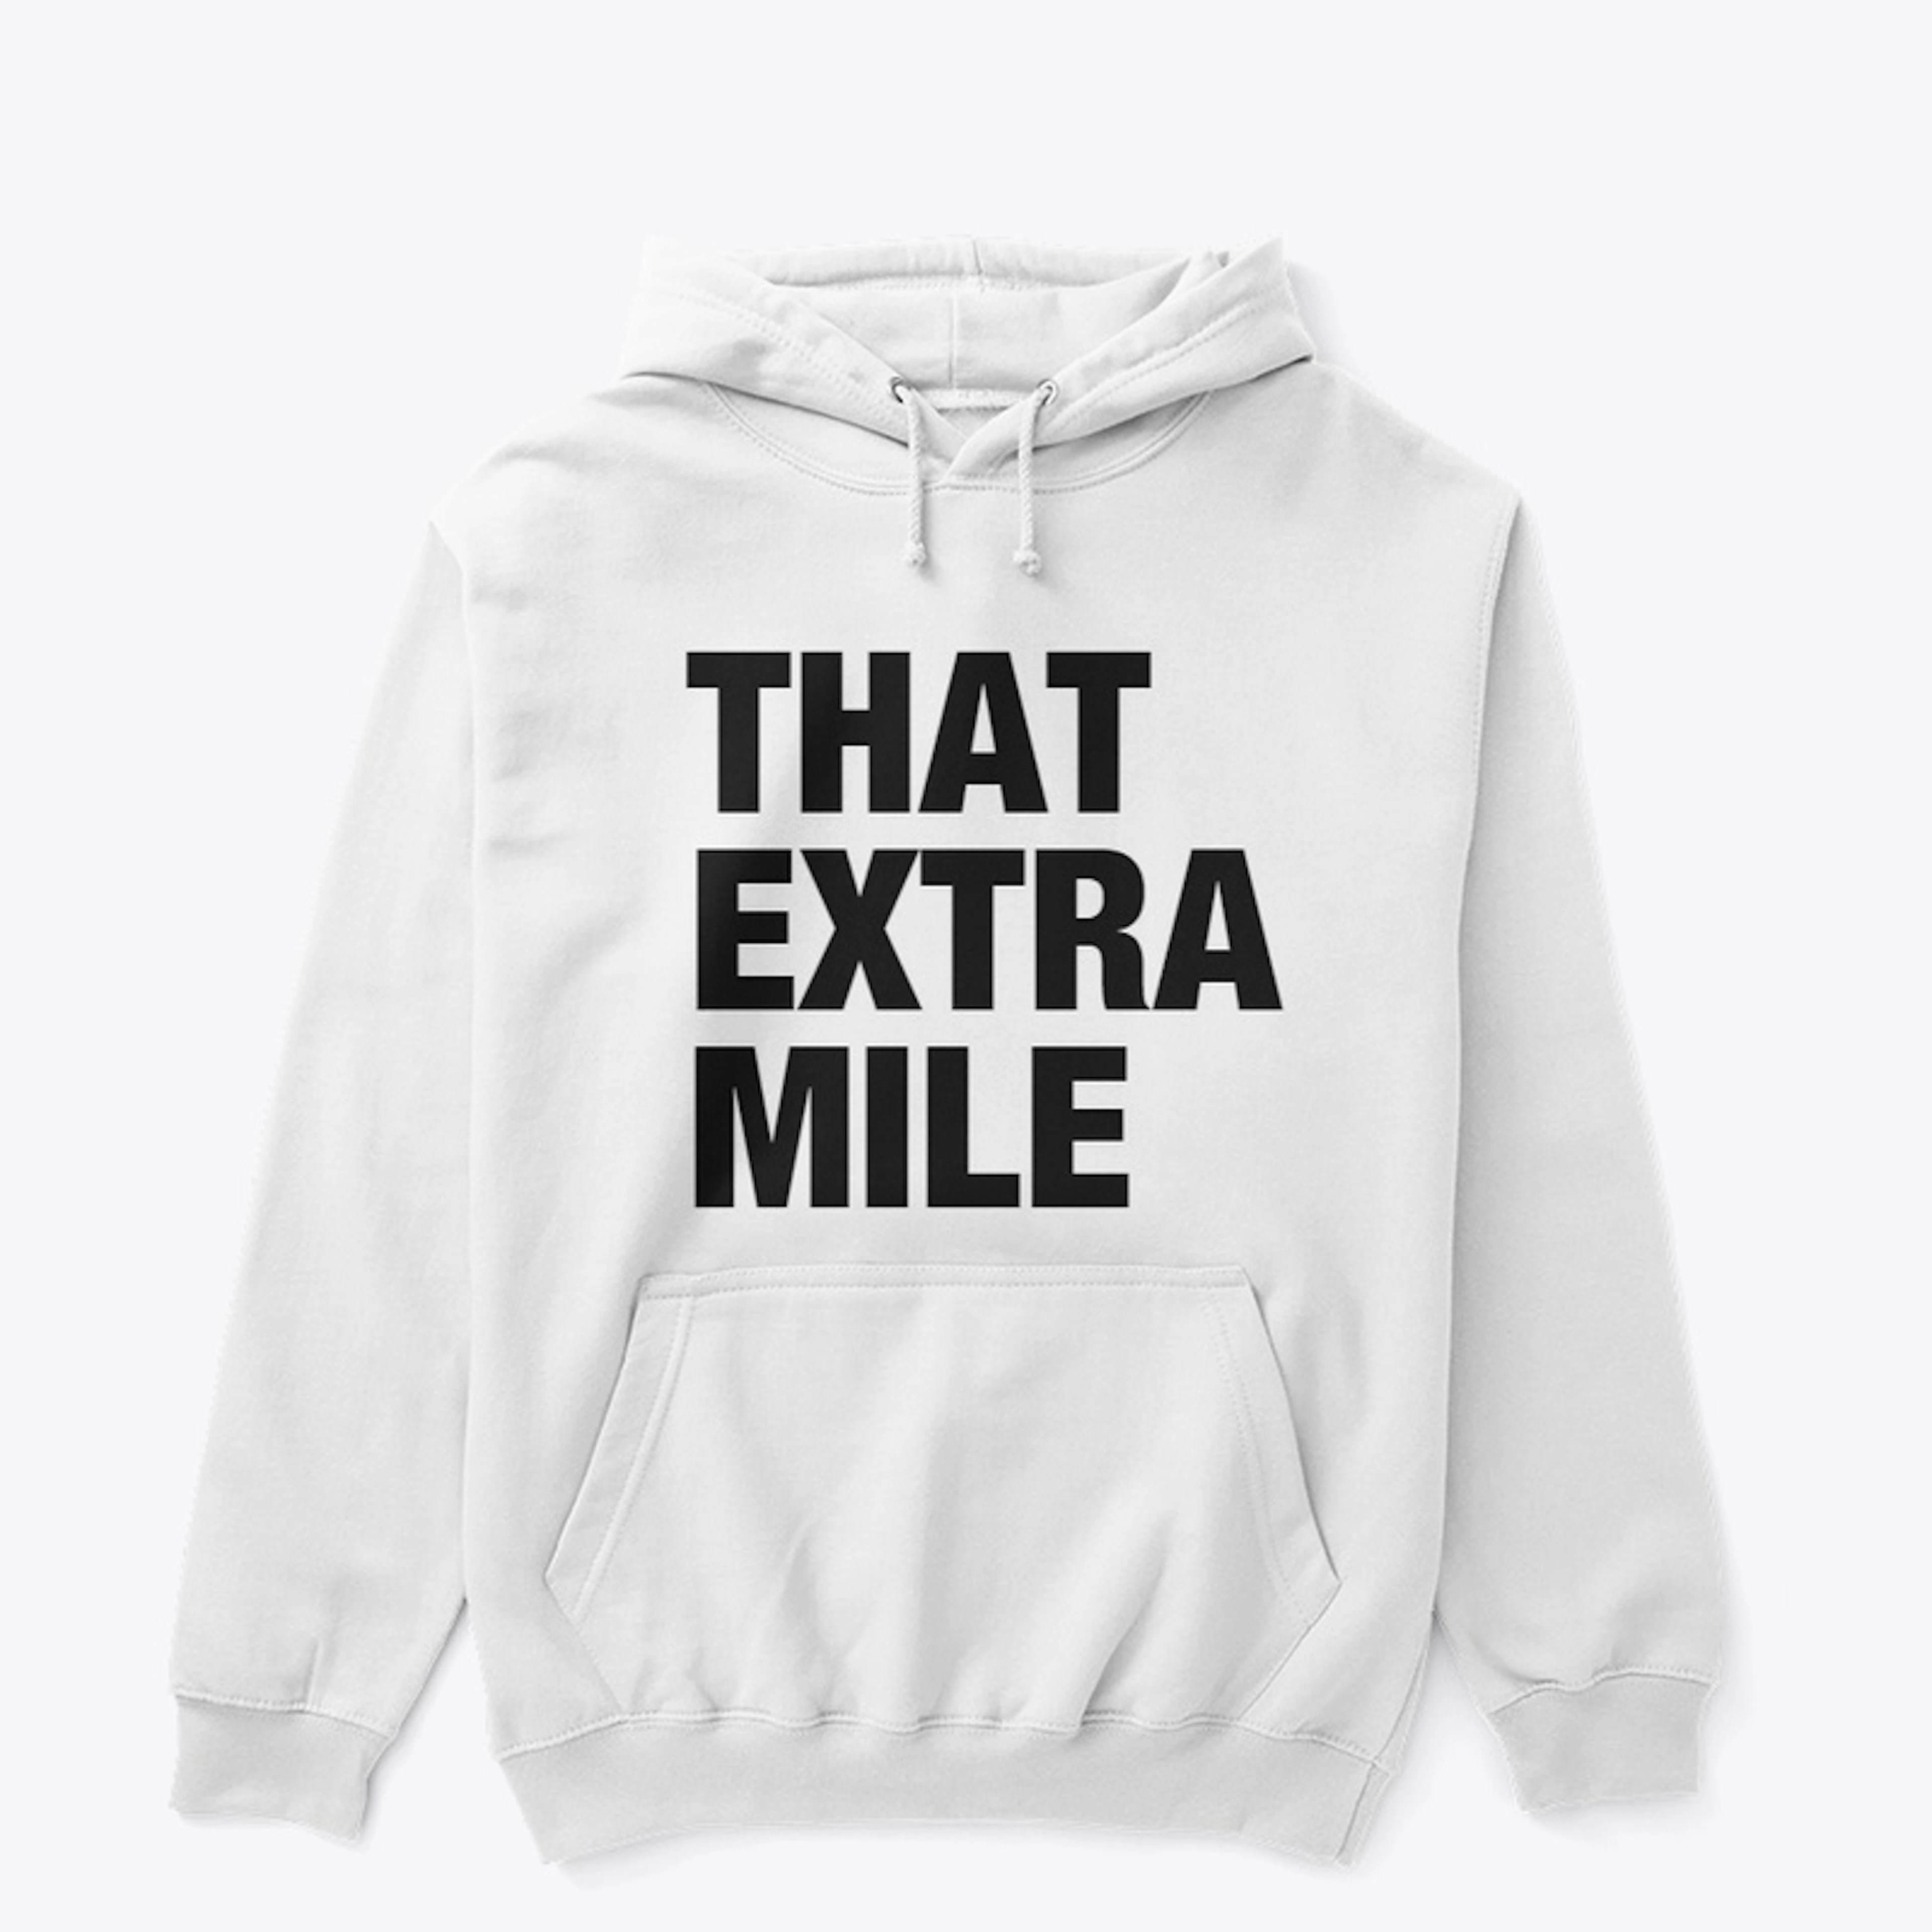 That Extra Mile - Premium Merch